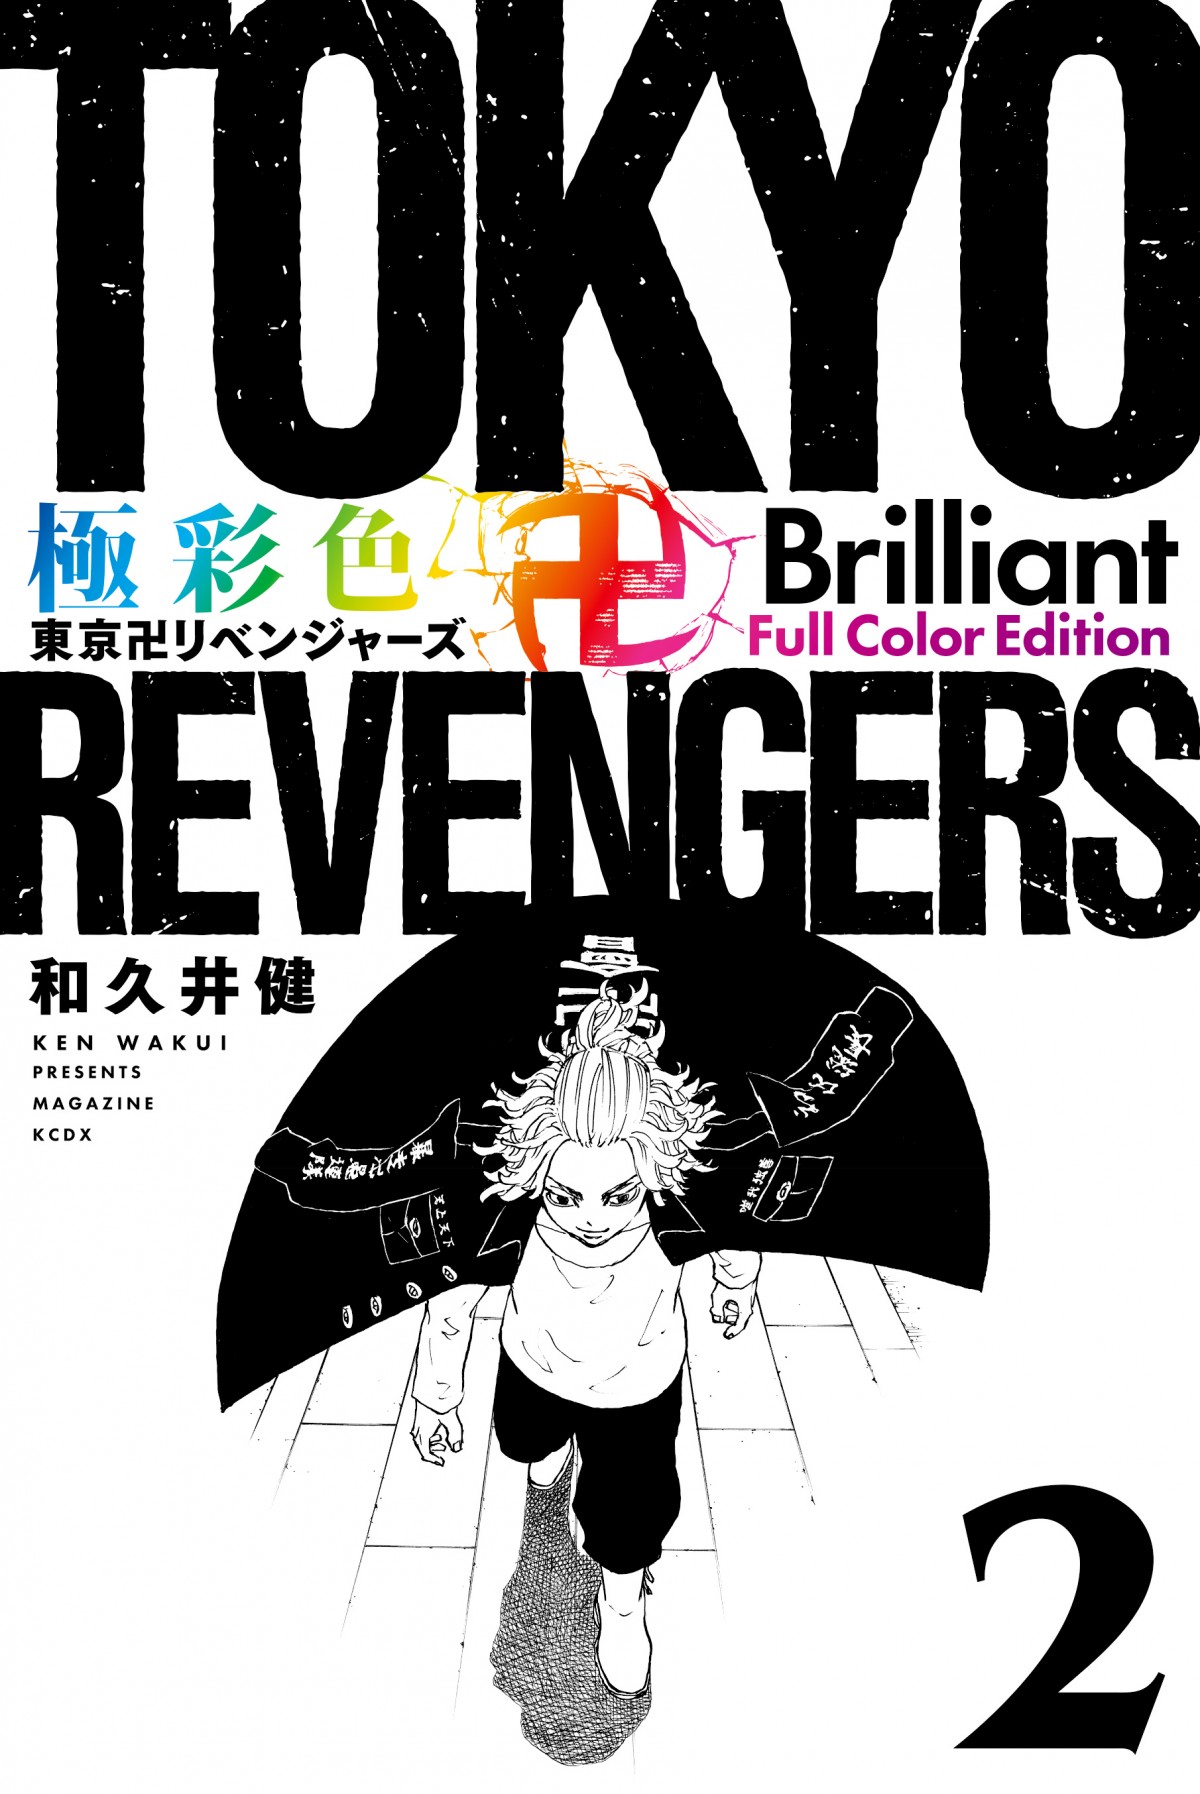 画像・写真 | 『東京卍リベンジャーズ』書籍7冊のビジュアル公開 来年1 ...